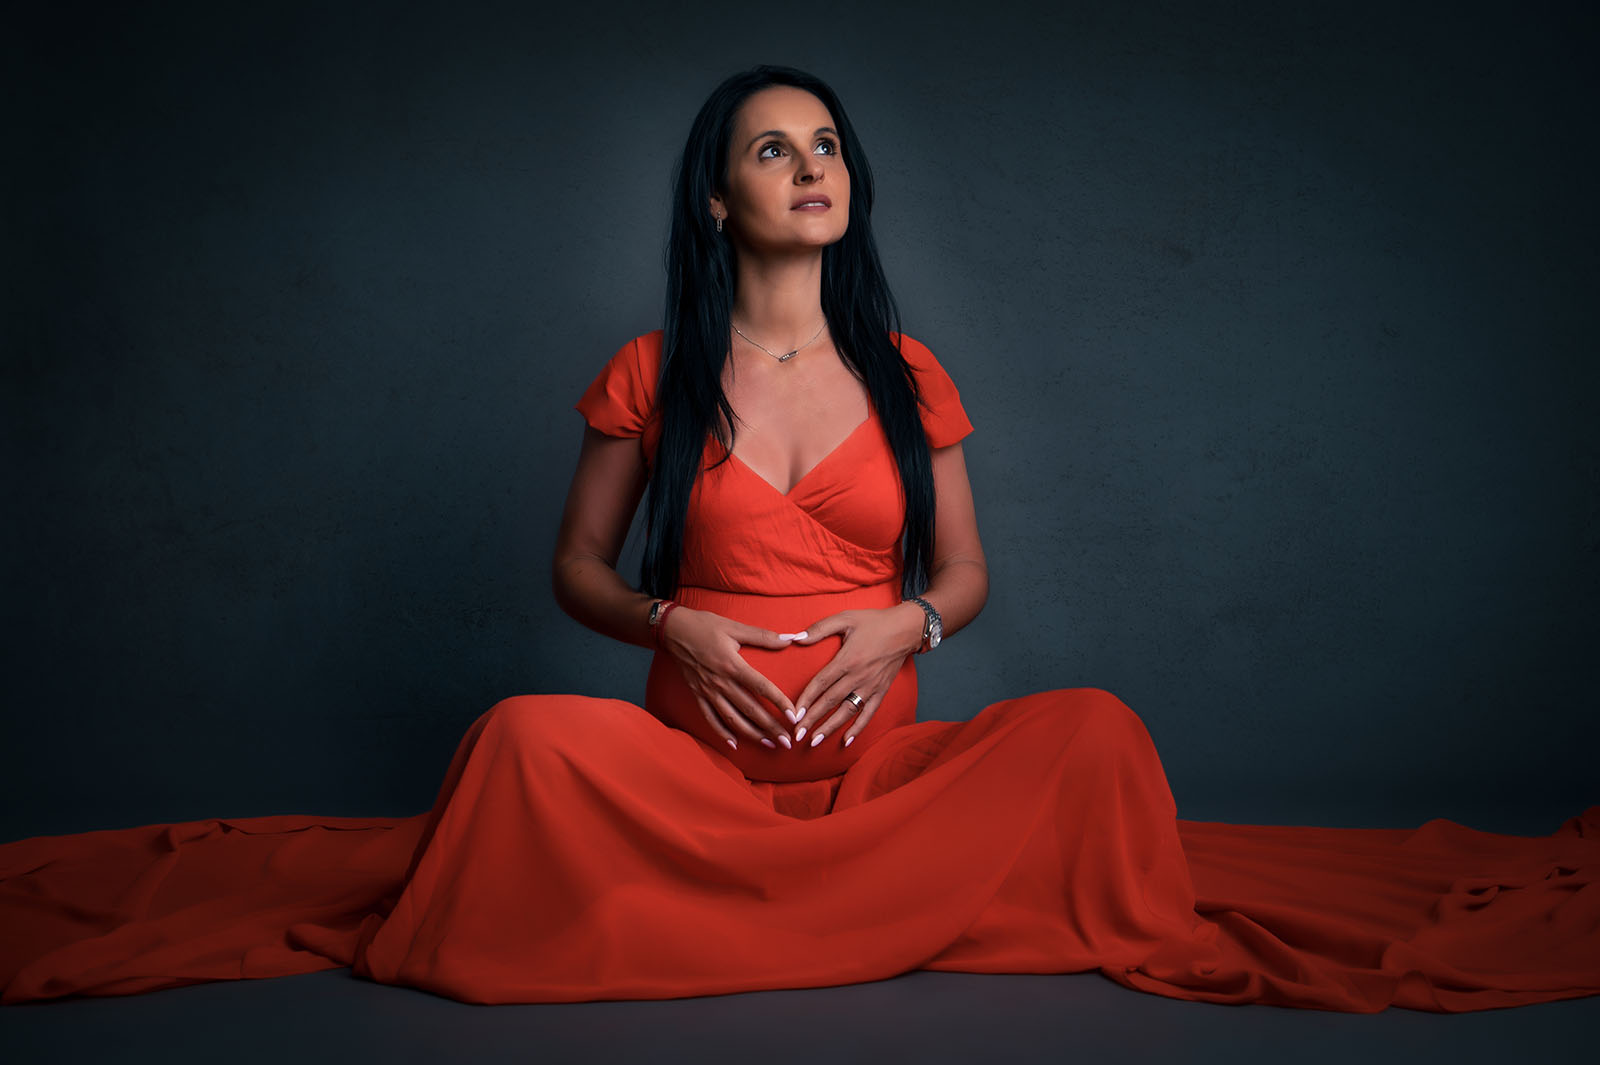 femme enceinte assise au sol vêtue d'une robe rouge, elle est brune a des cheveux longs, son visage est orienté vers le haut et ses mains forment un cœur sur son ventre